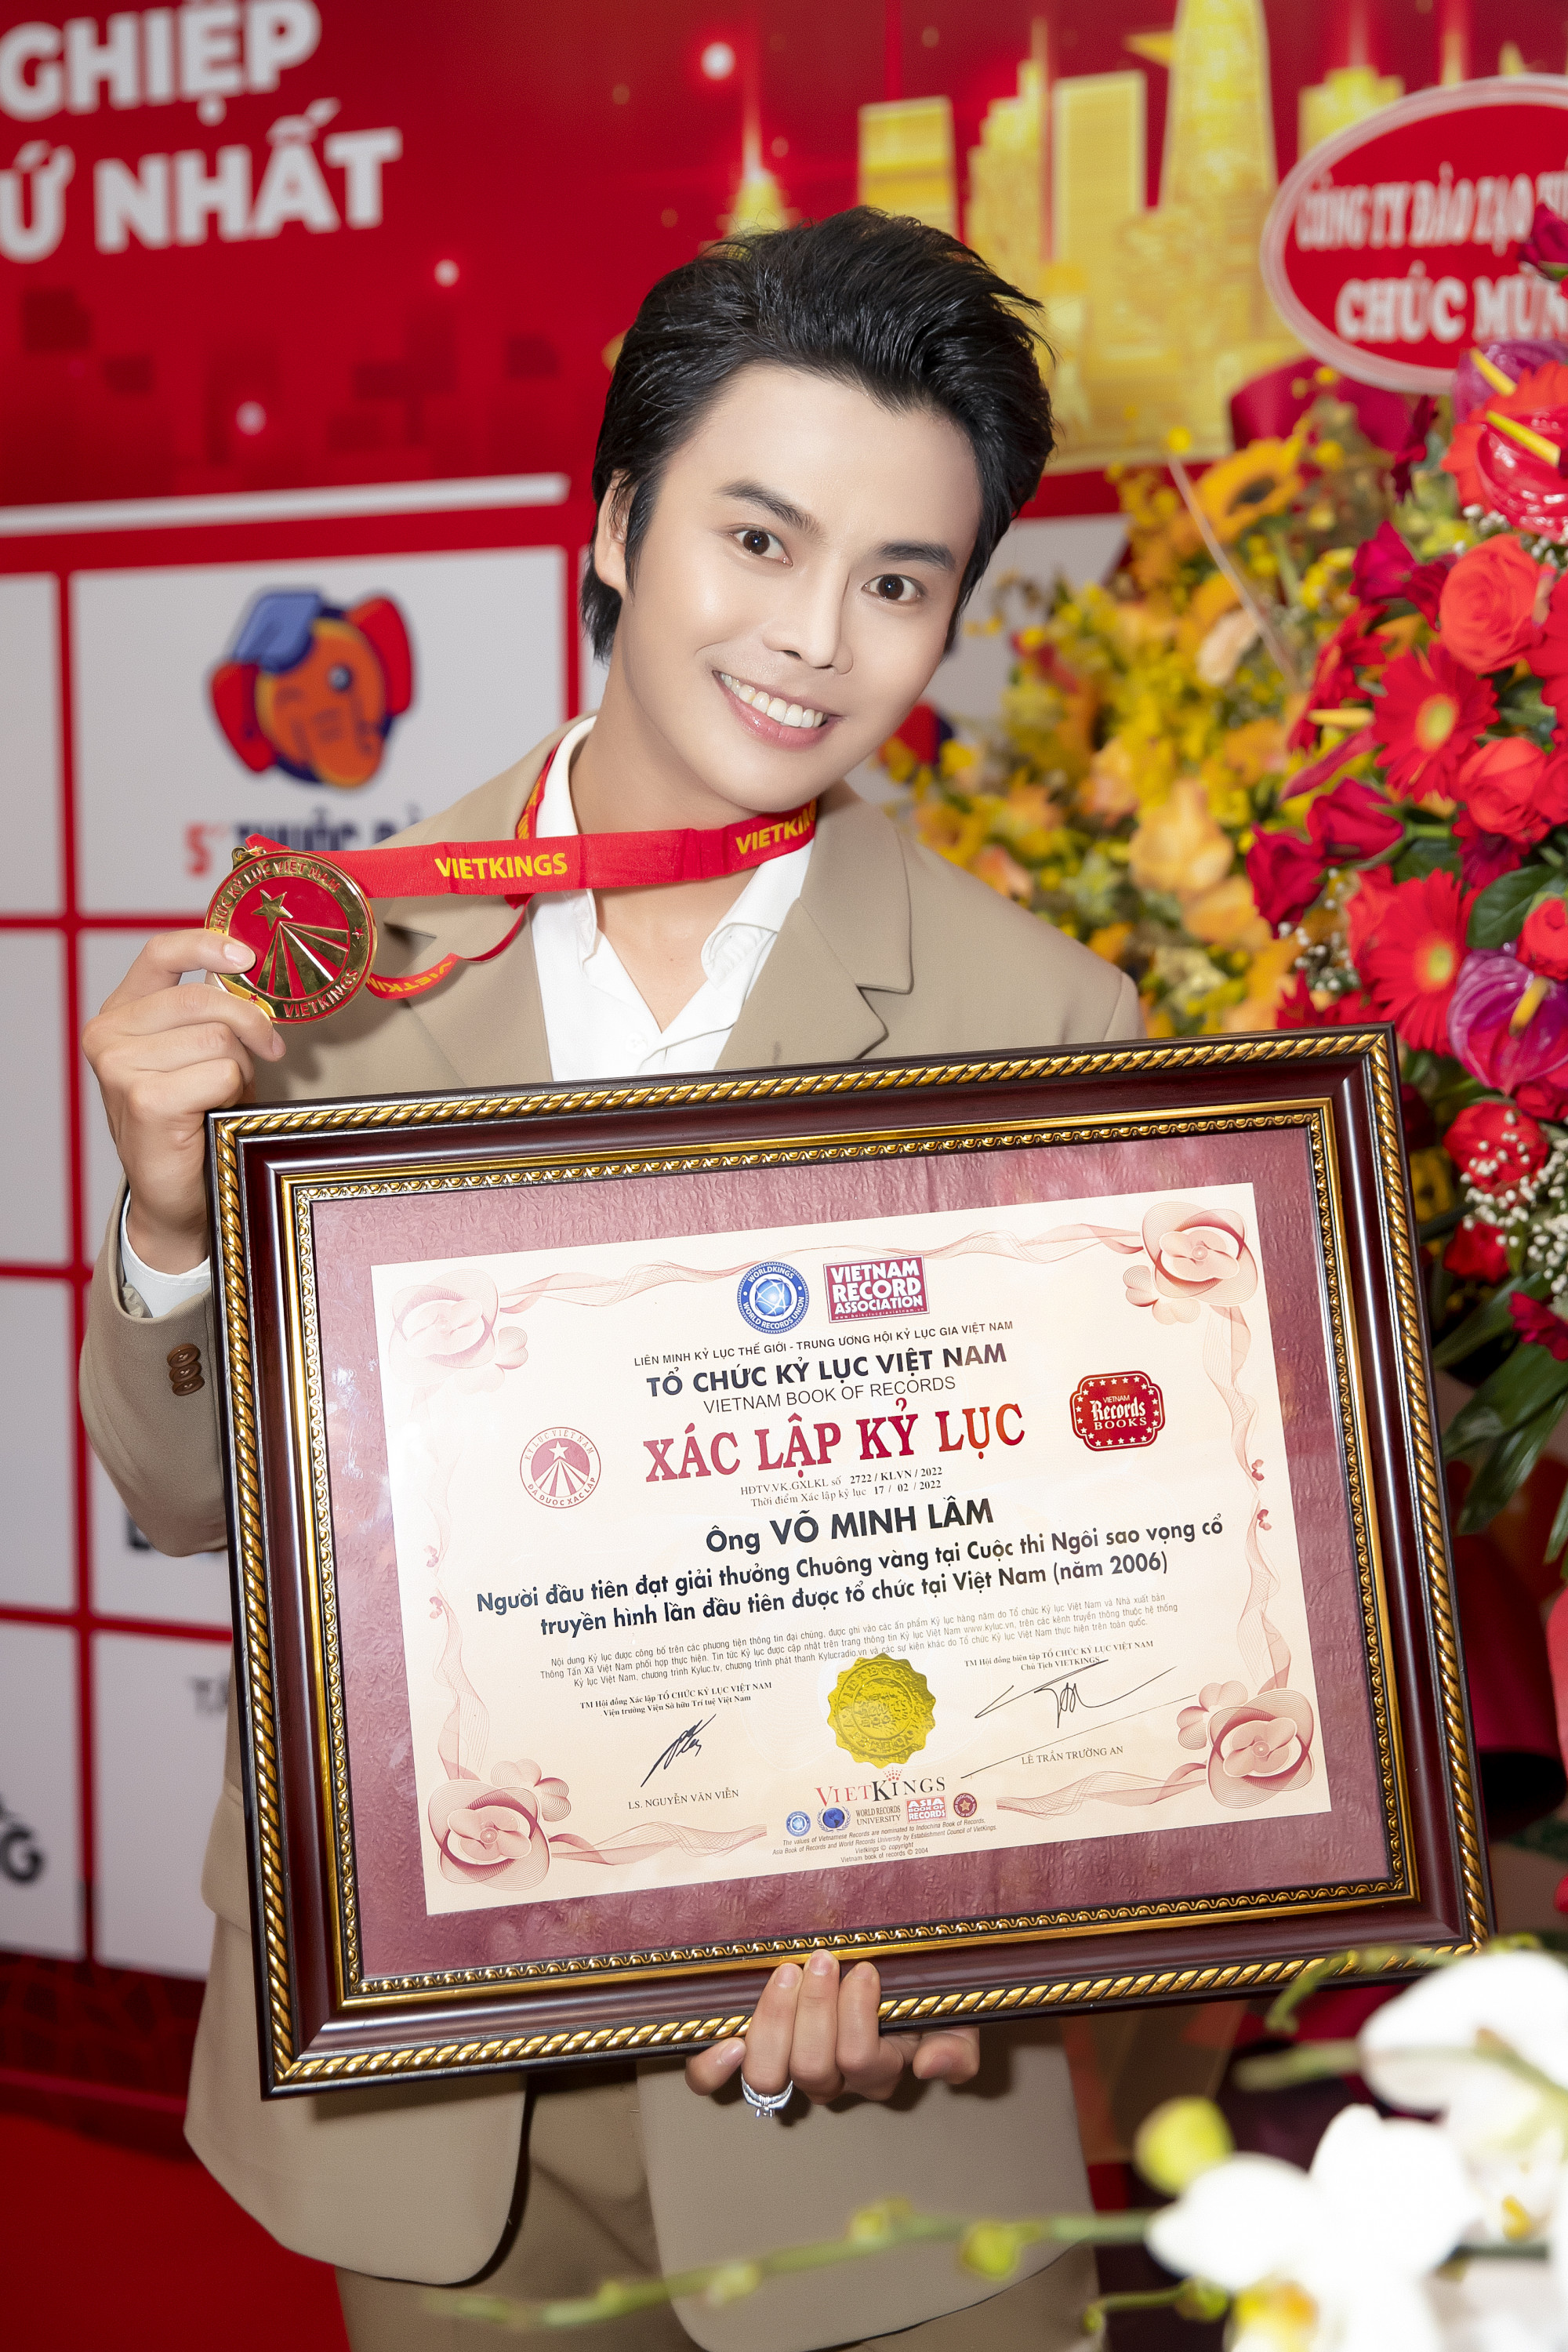 Nghệ sĩ Võ Minh Lâm nhận giấy chứng nhận từ tổ chức Kỷ lục Việt Nam vào ngày 22/12